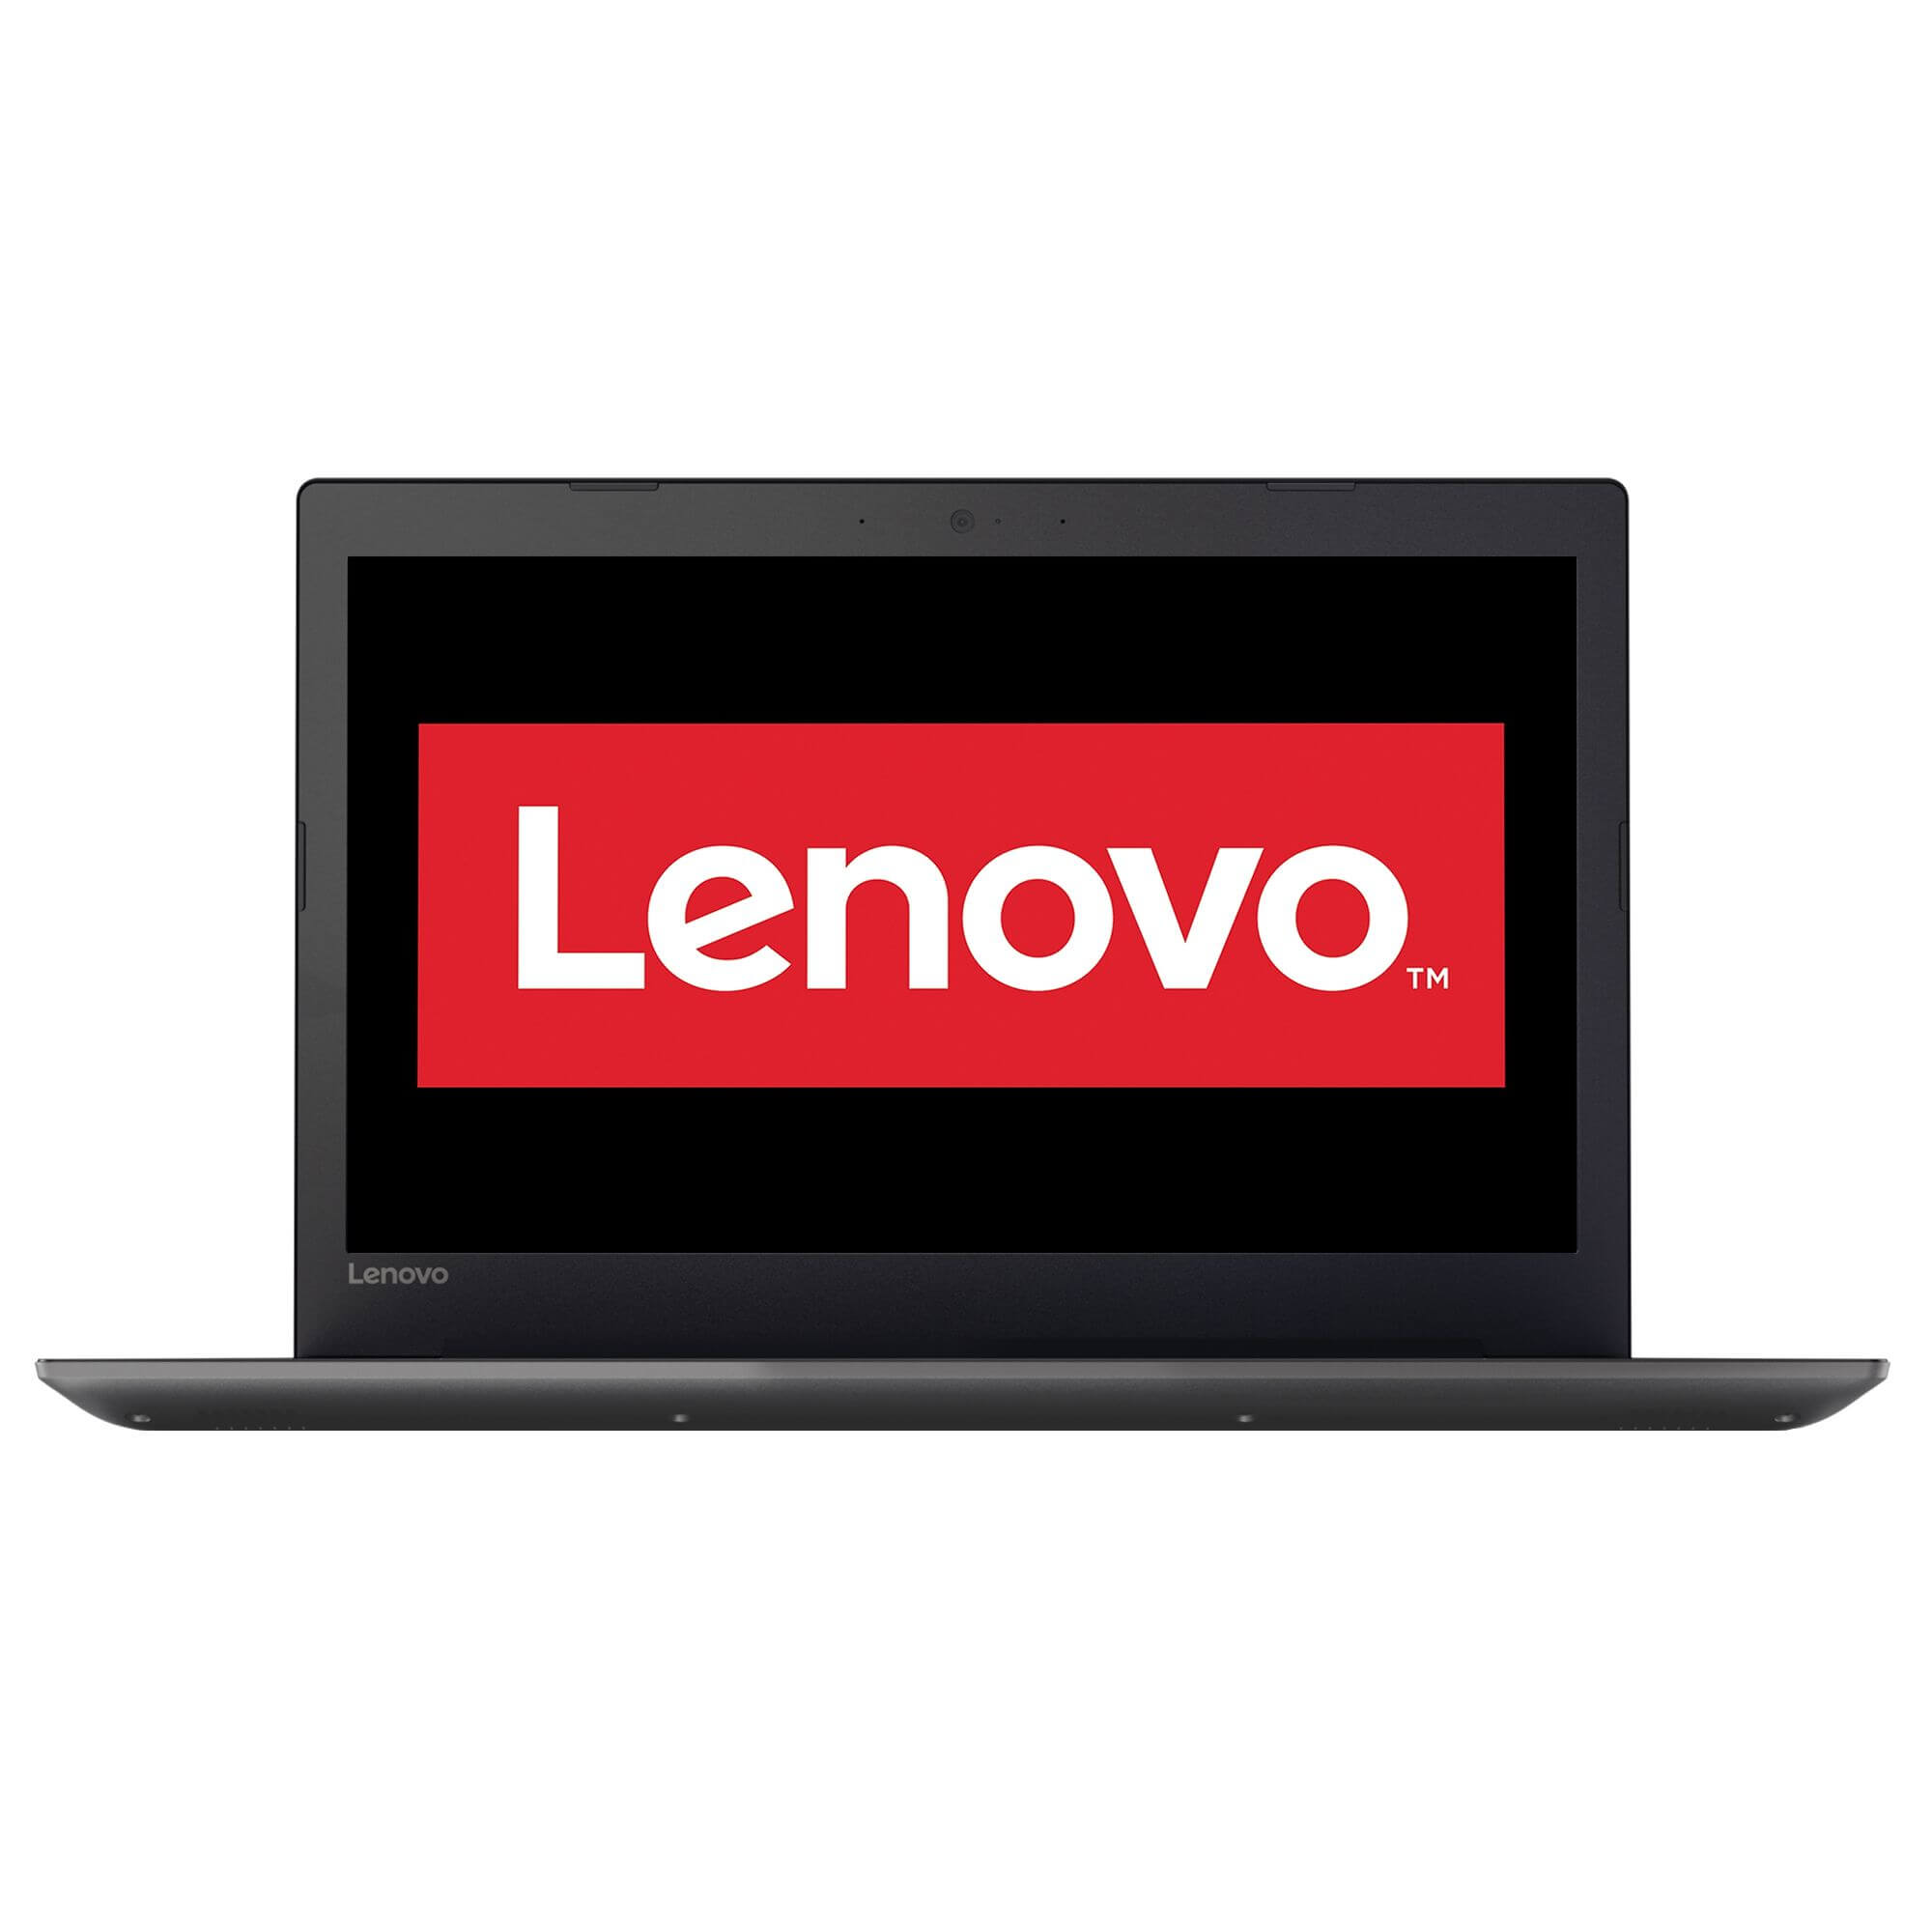 Laptop Lenovo IdeaPad 320-15IKBN, Intel Core i5-7200U, 4GB DDR4, HDD 1TB, nVidia GeForce 920MX 2GB, Free DOS